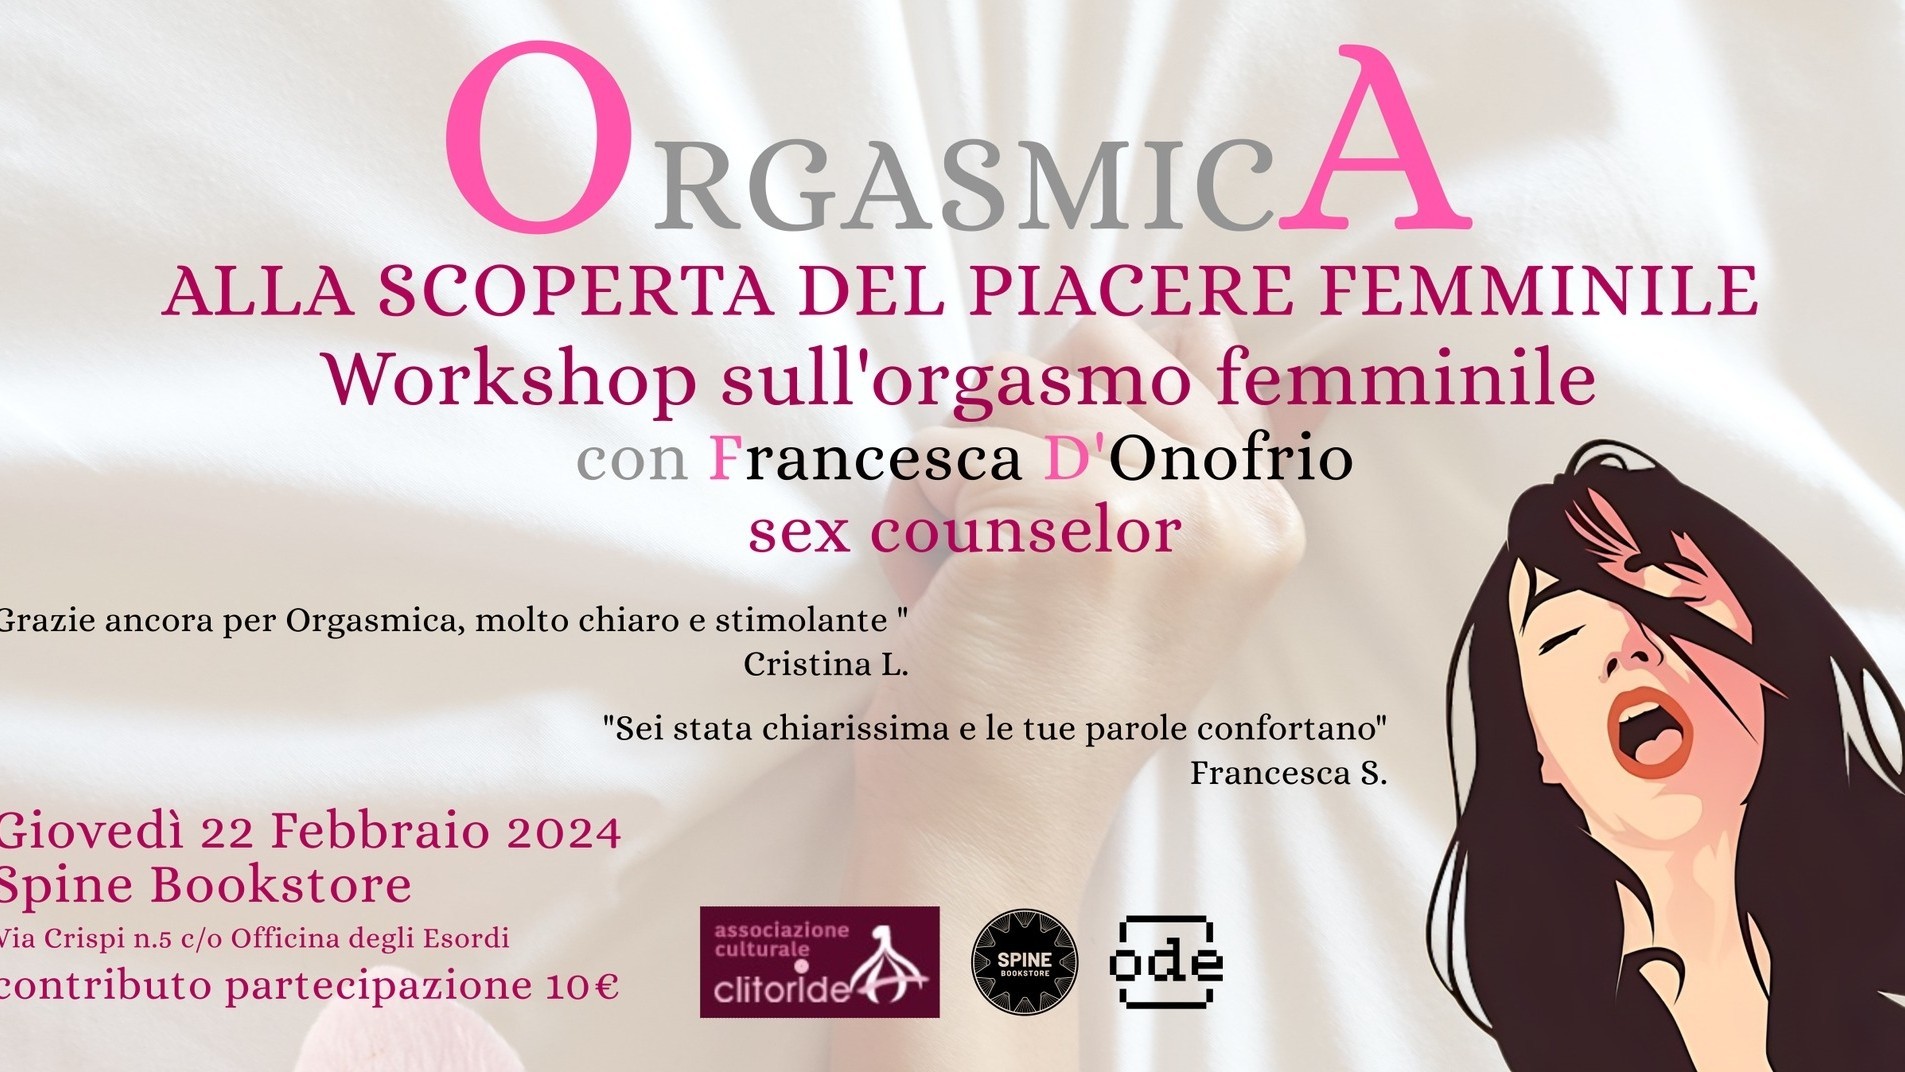 Orgasmica, alla scoperta del piacere femminile. Laboratorio con Francesca D'Onofrio sex counselor